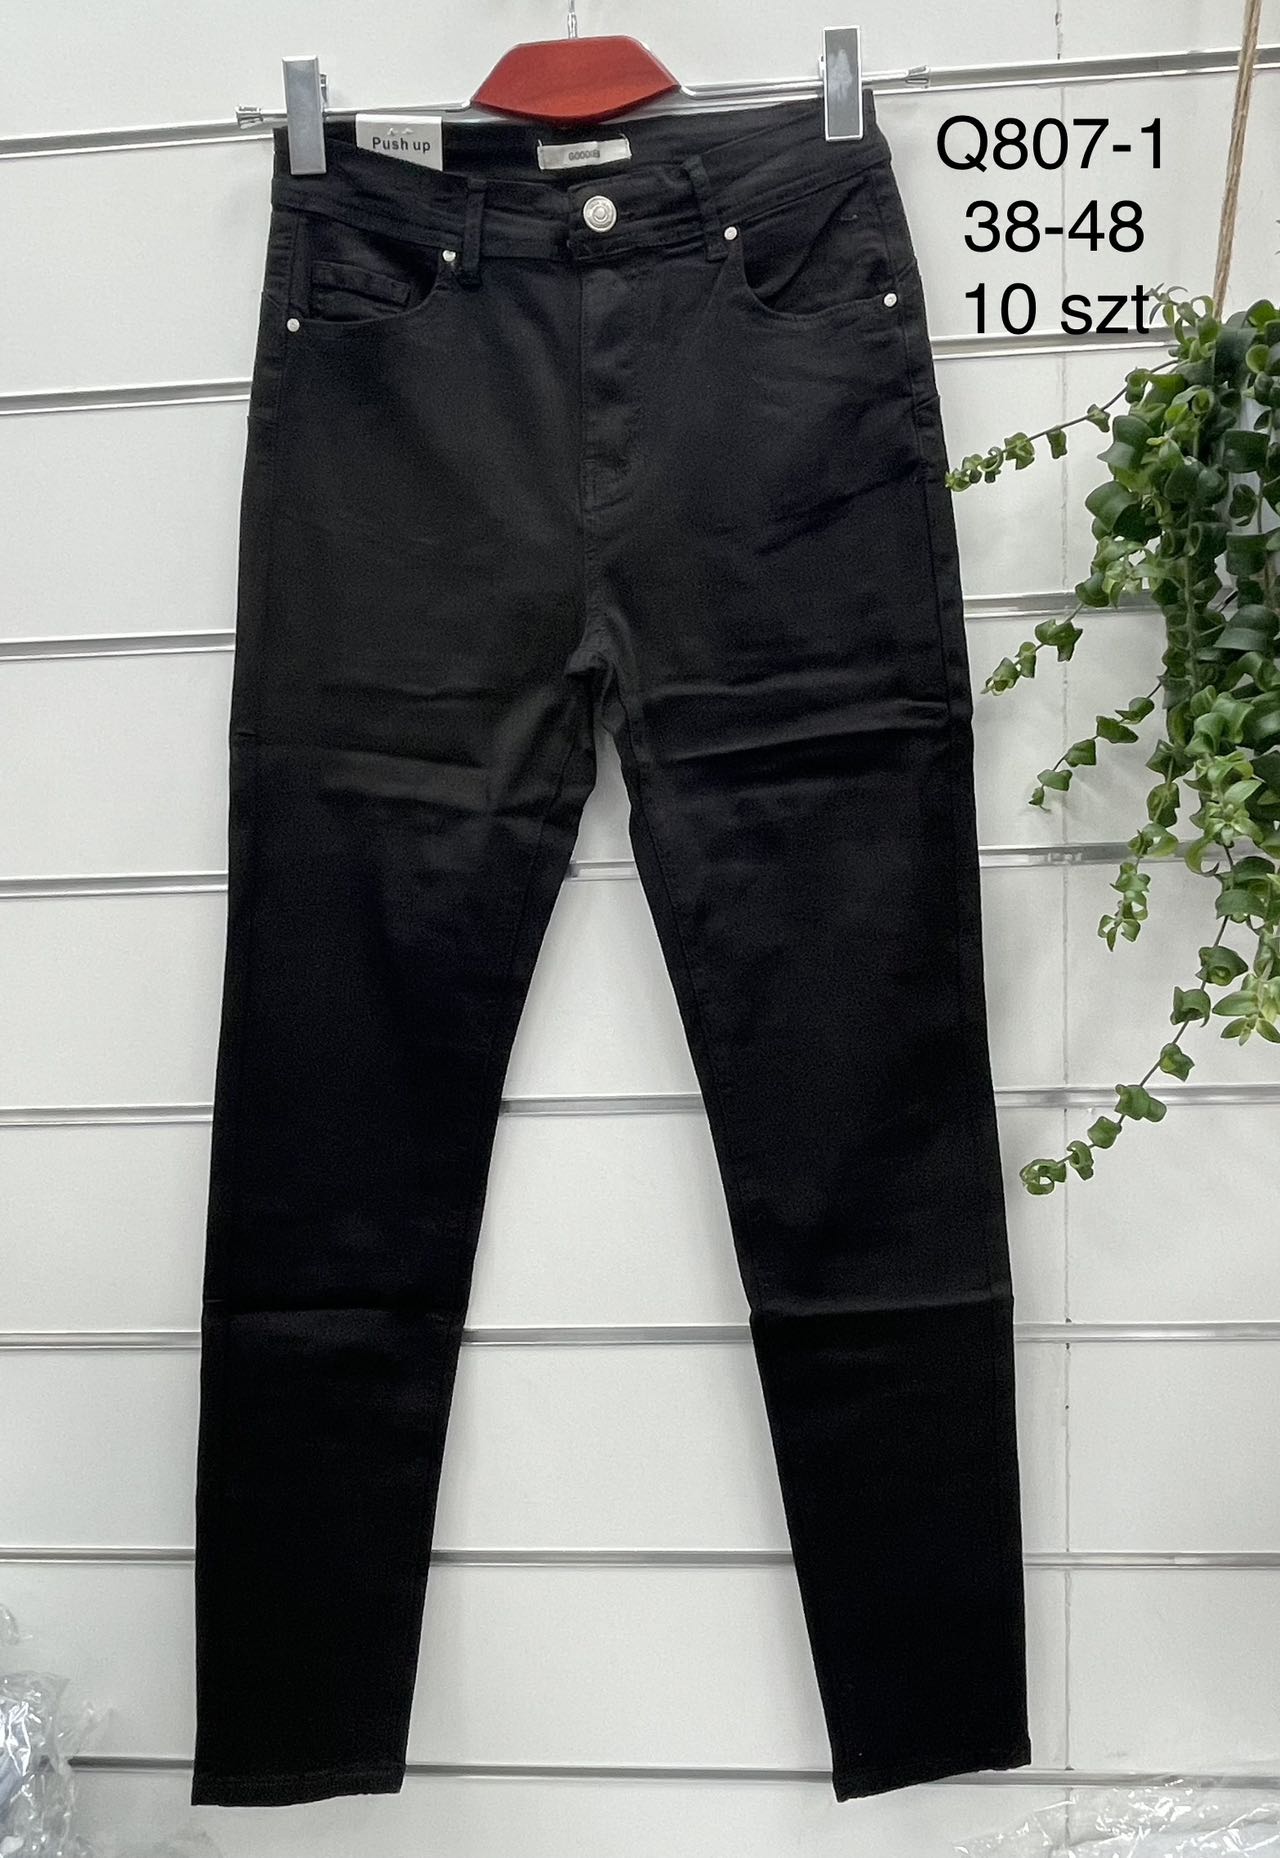 Spodnie damskie jeans  duże Roz  38-48 .  1 kolor . Paczka 10szt